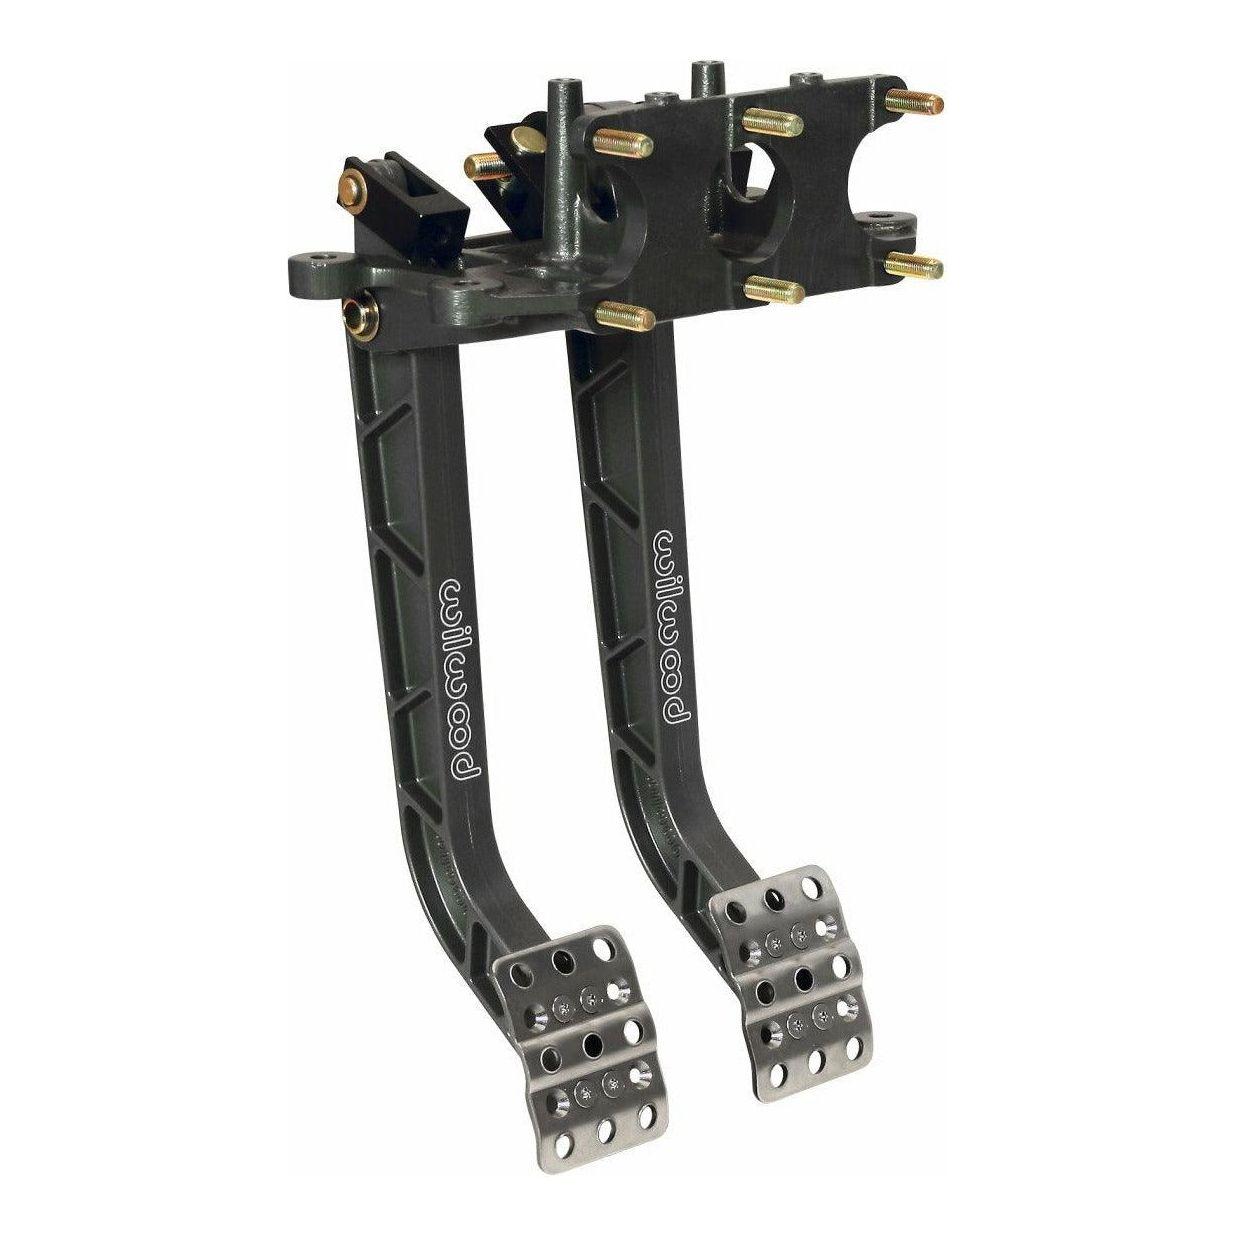 Wilwood Adjustable Dual Pedal - Brake / Clutch - Rev. Swing Mount - 6.25:1 - SMINKpower Performance Parts WIL340-11299 Wilwood